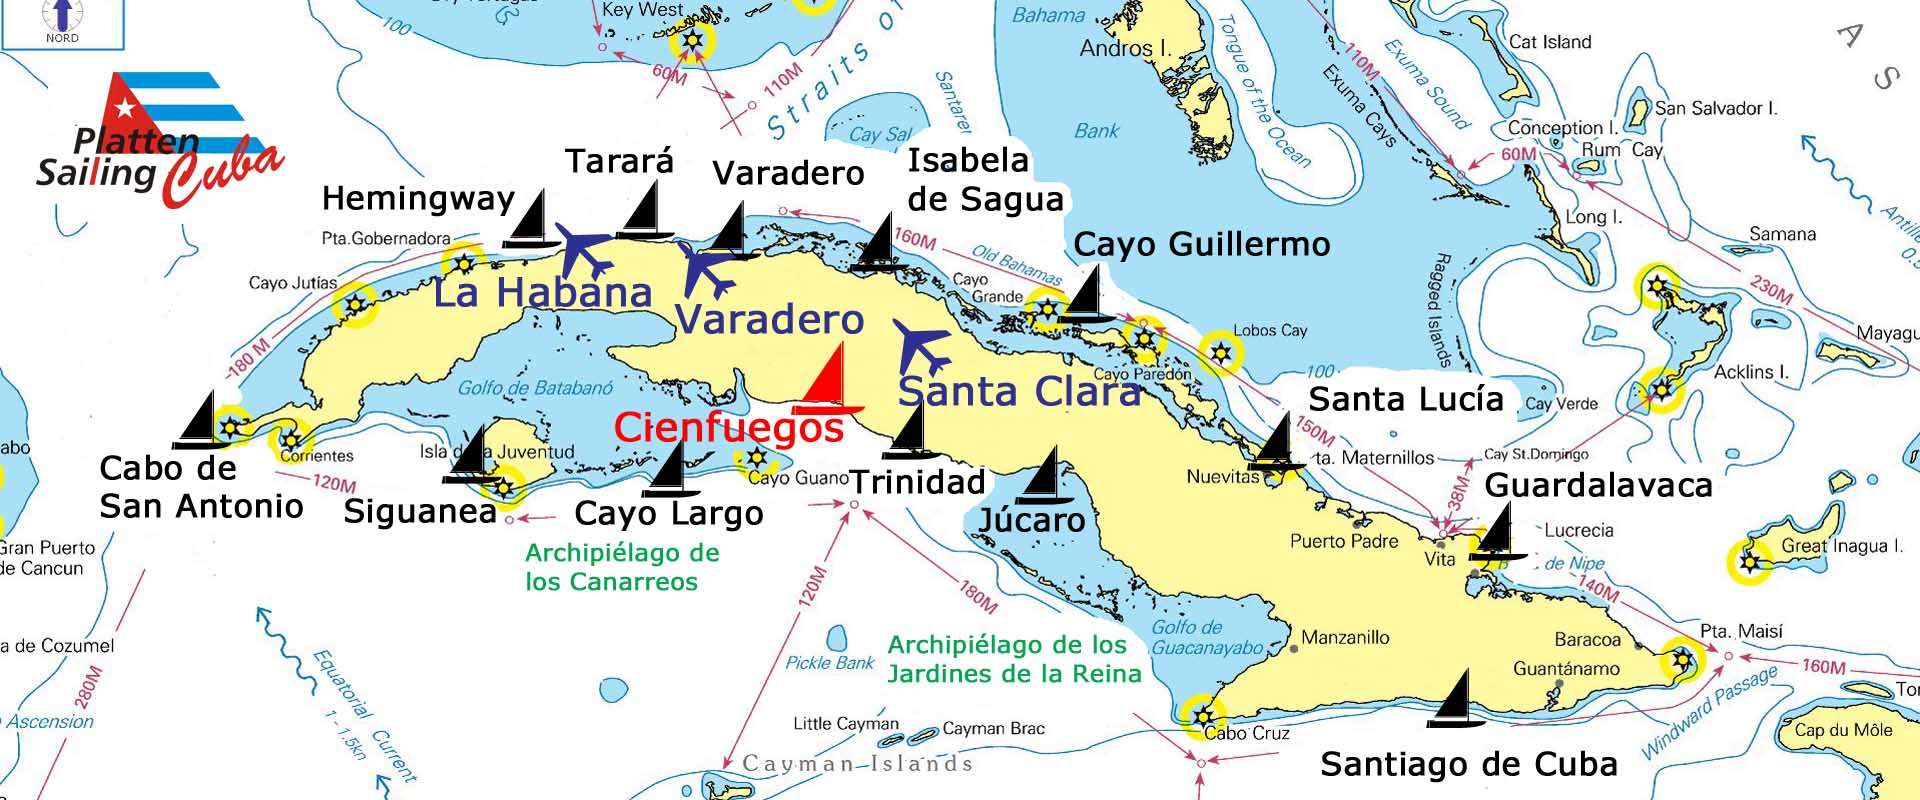 Yachtbasis Cuba - Platten Sailing 